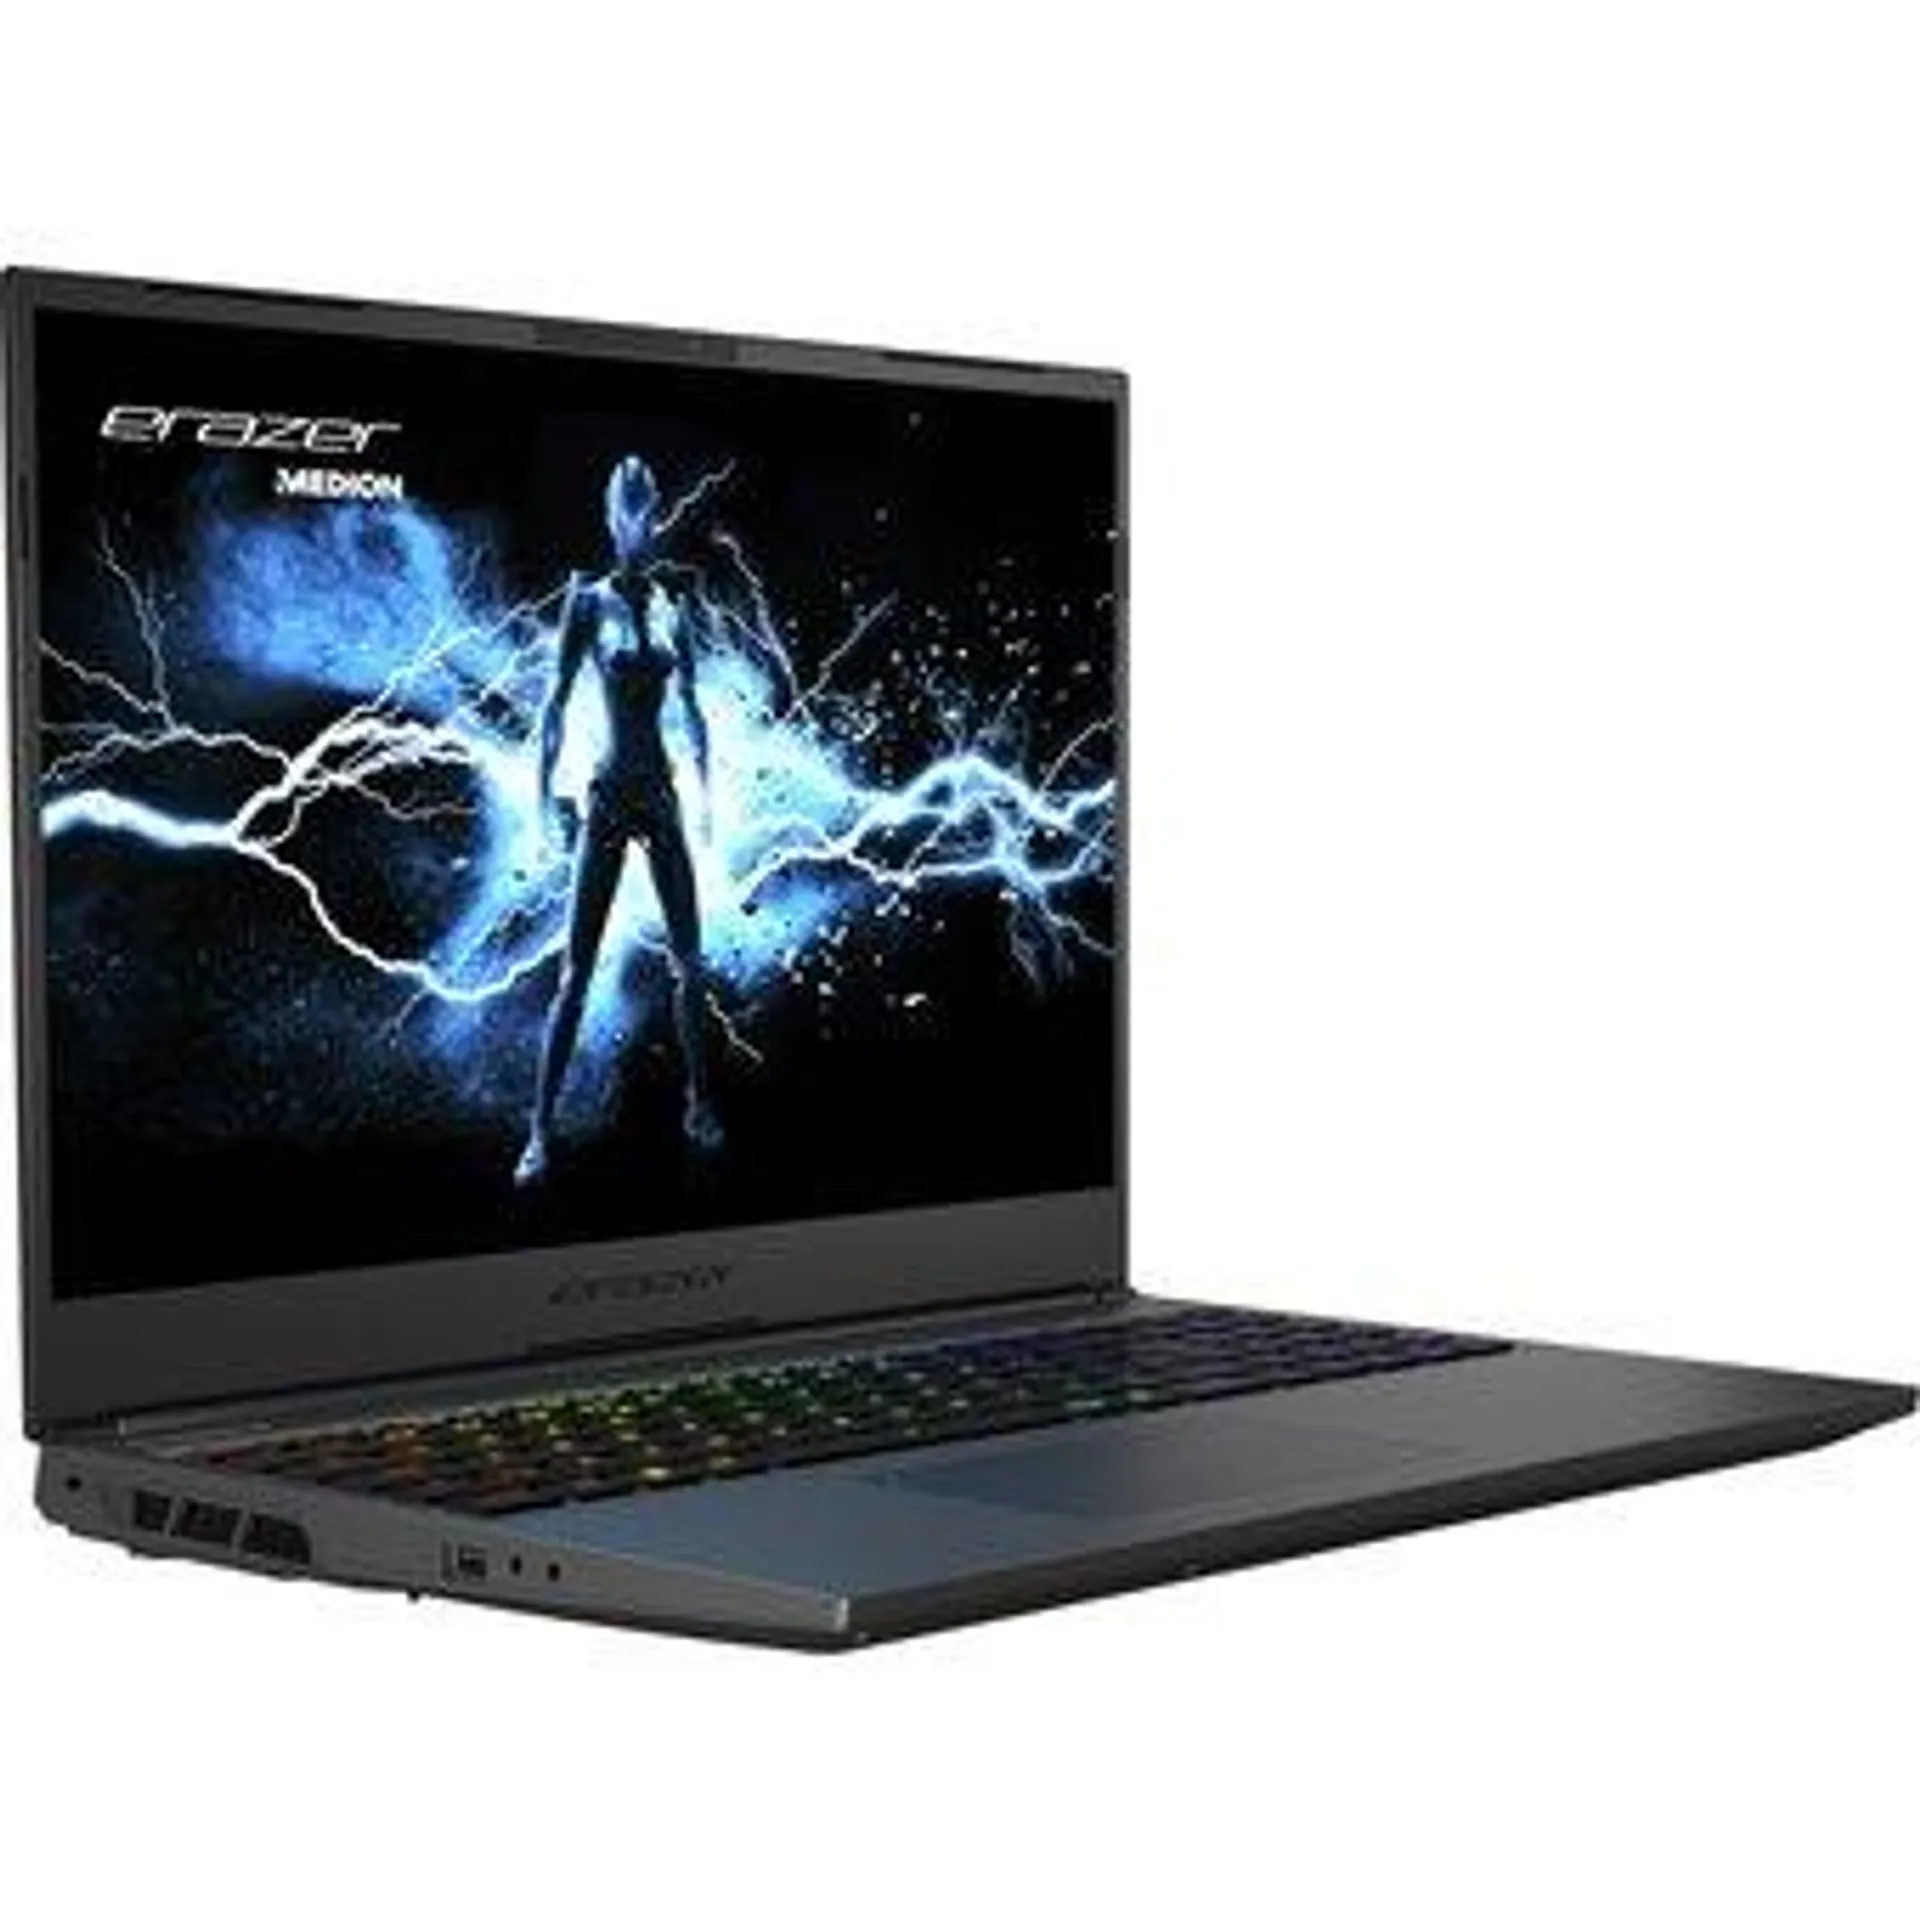 ERAZER Major X20 MD62520 Gaming laptop